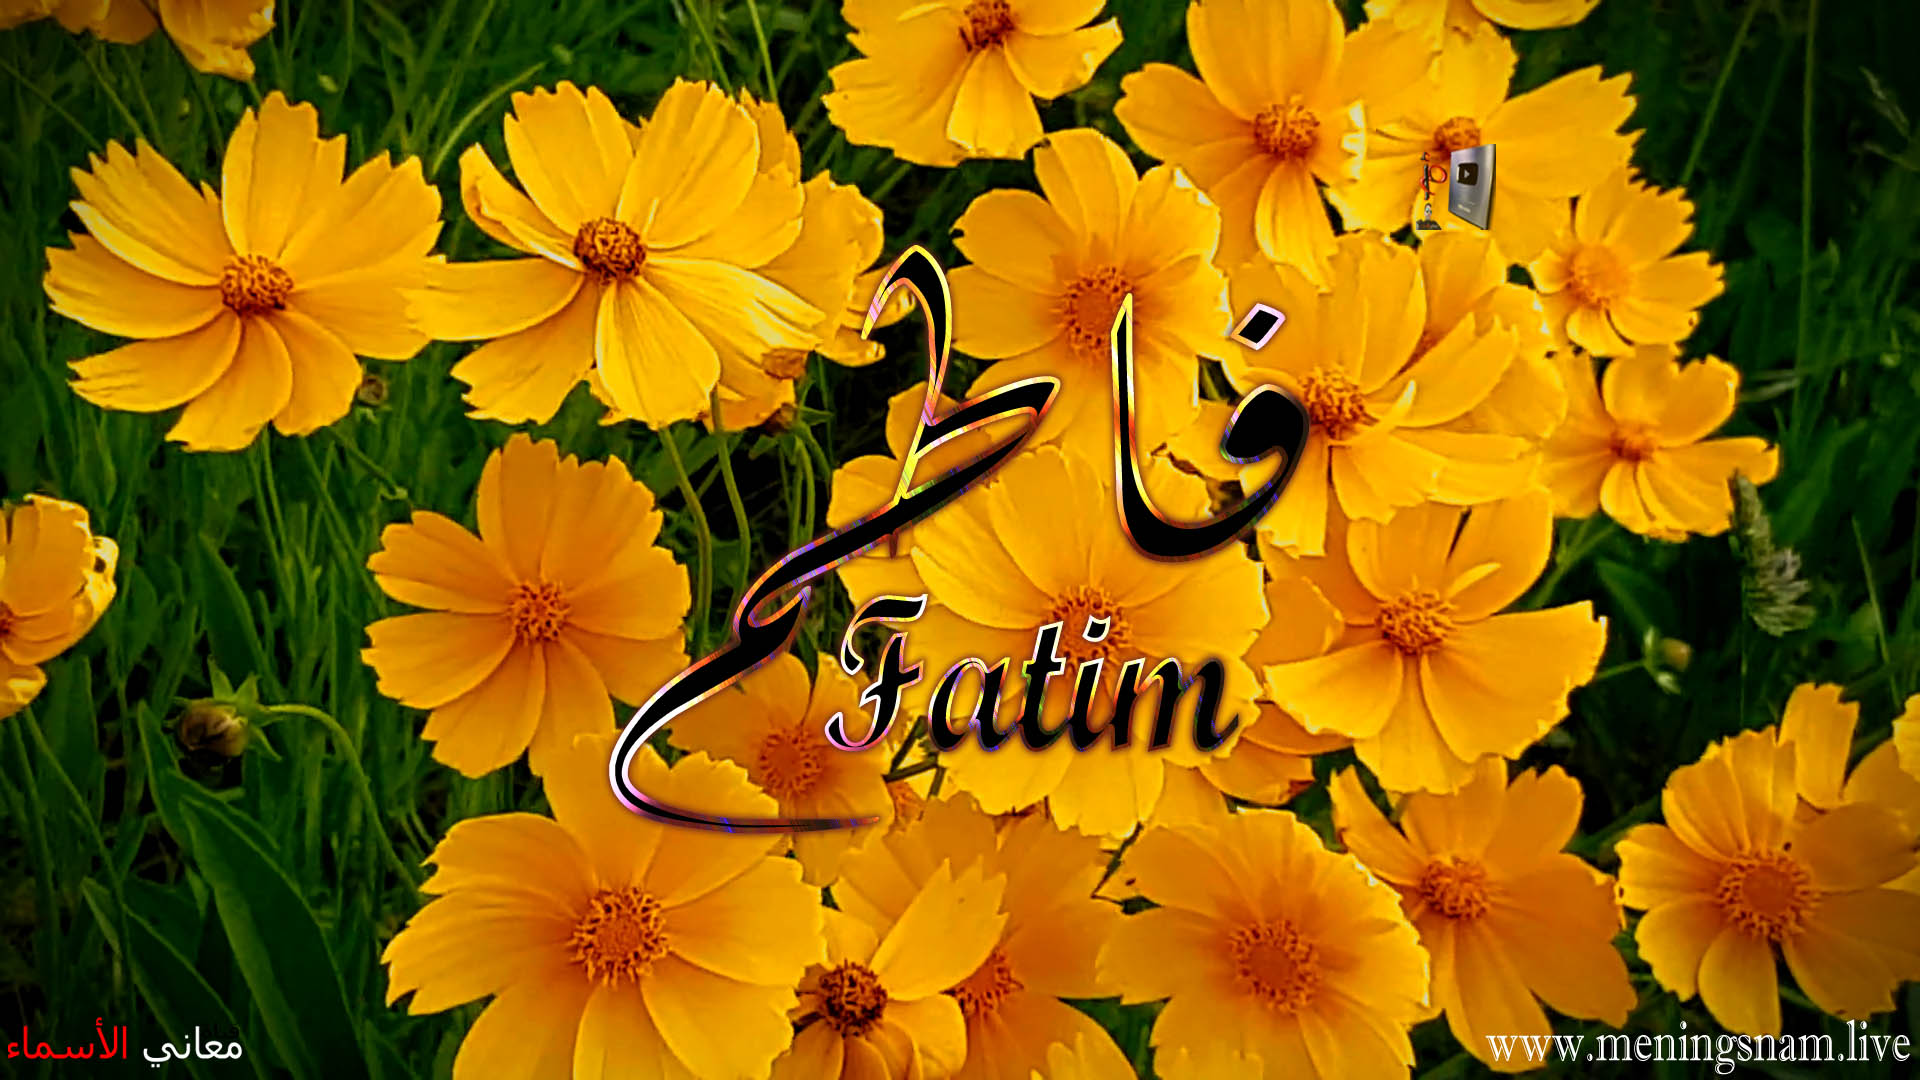 معنى اسم, فاطم, وصفات حاملة, هذا الاسم, Fatim,